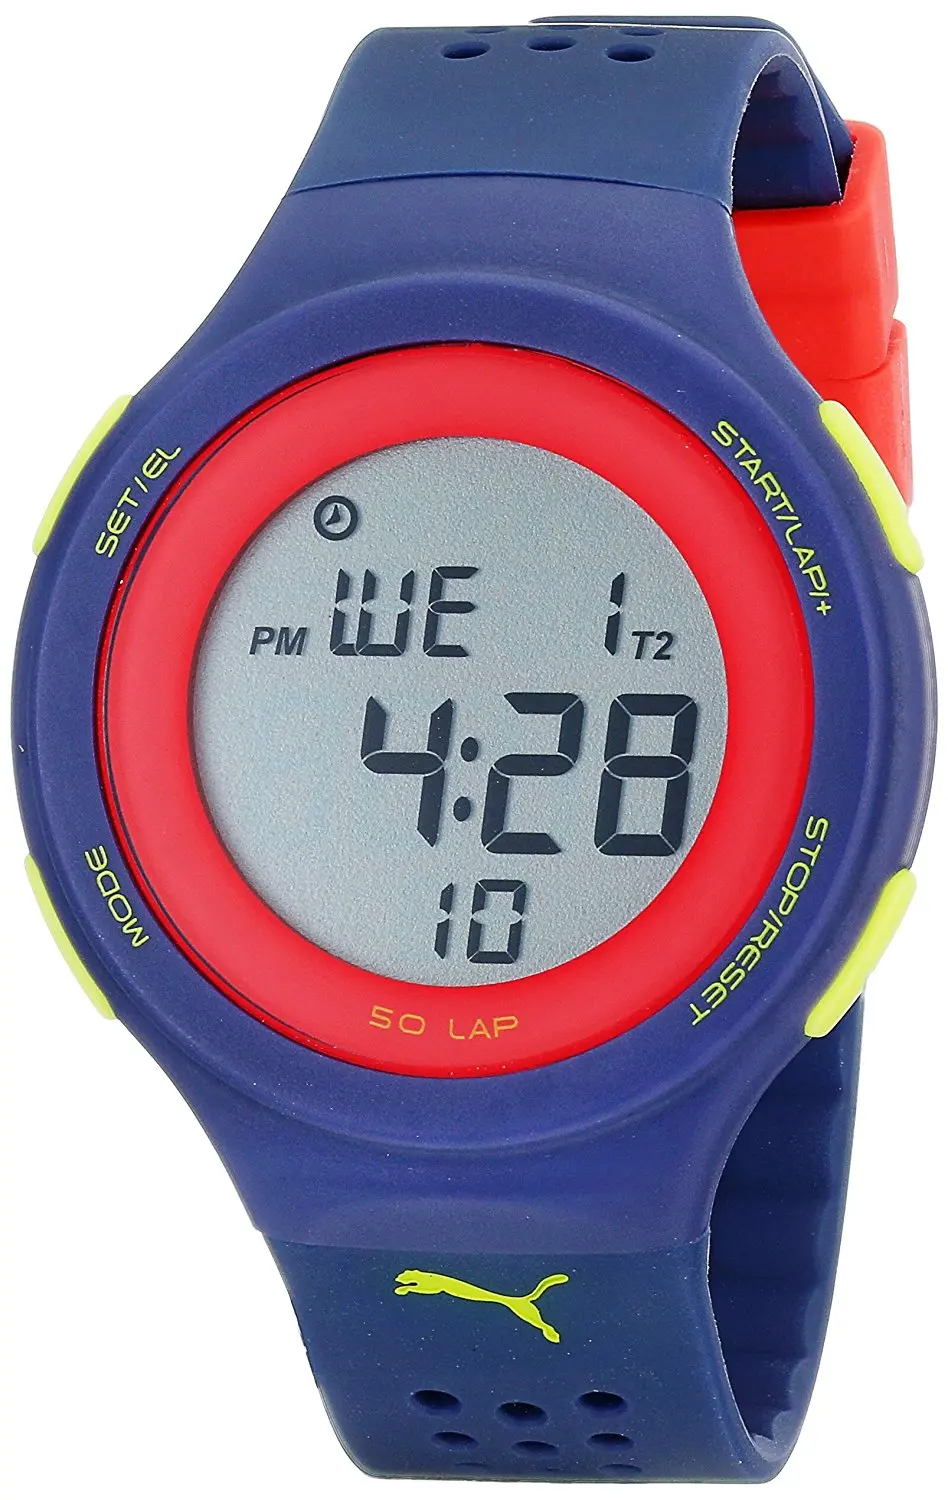 puma digital watch